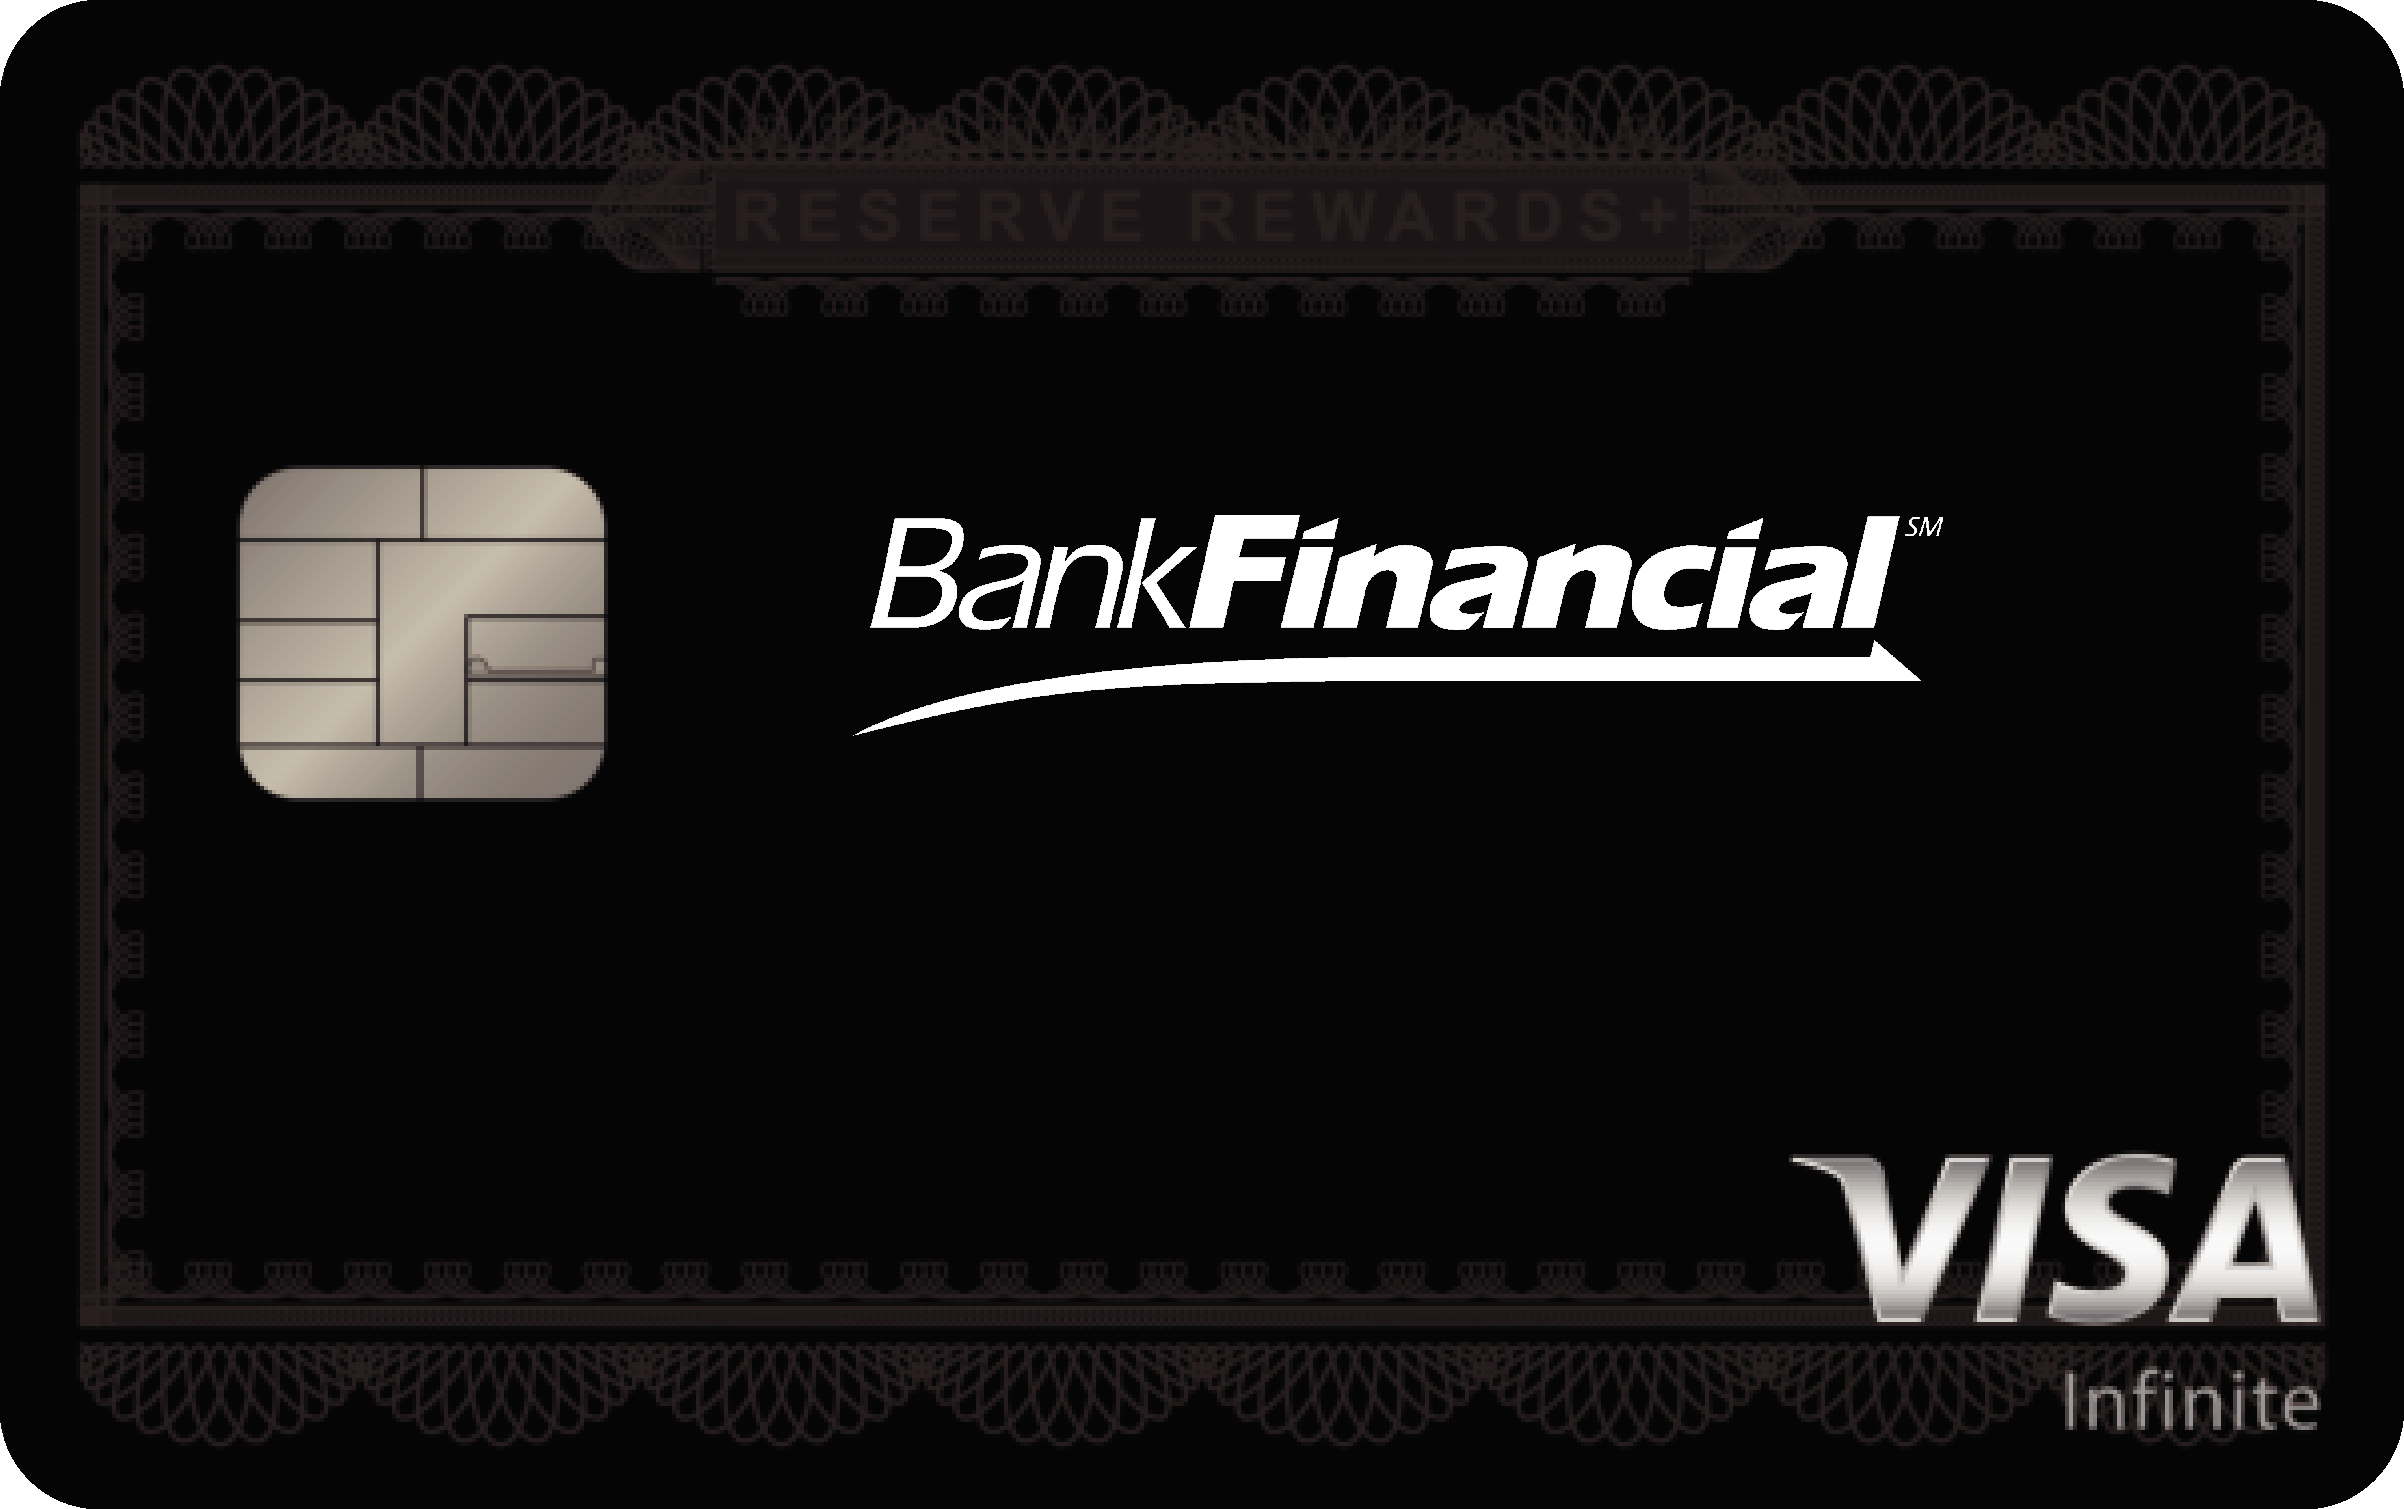 BankFinancial